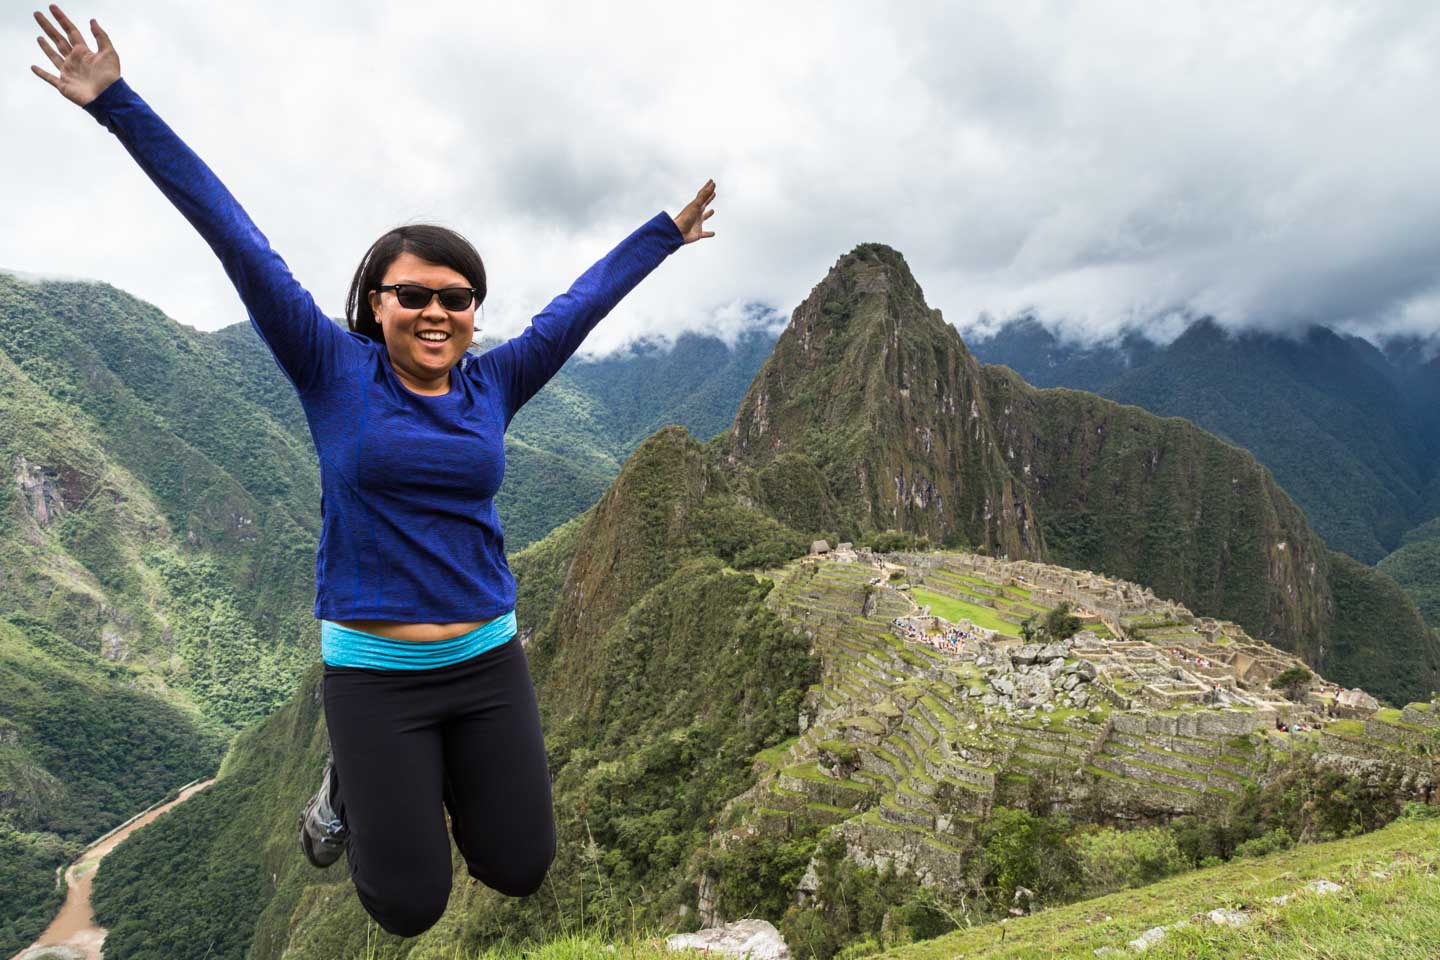 Julie jumping at Machu Picchu, Peru